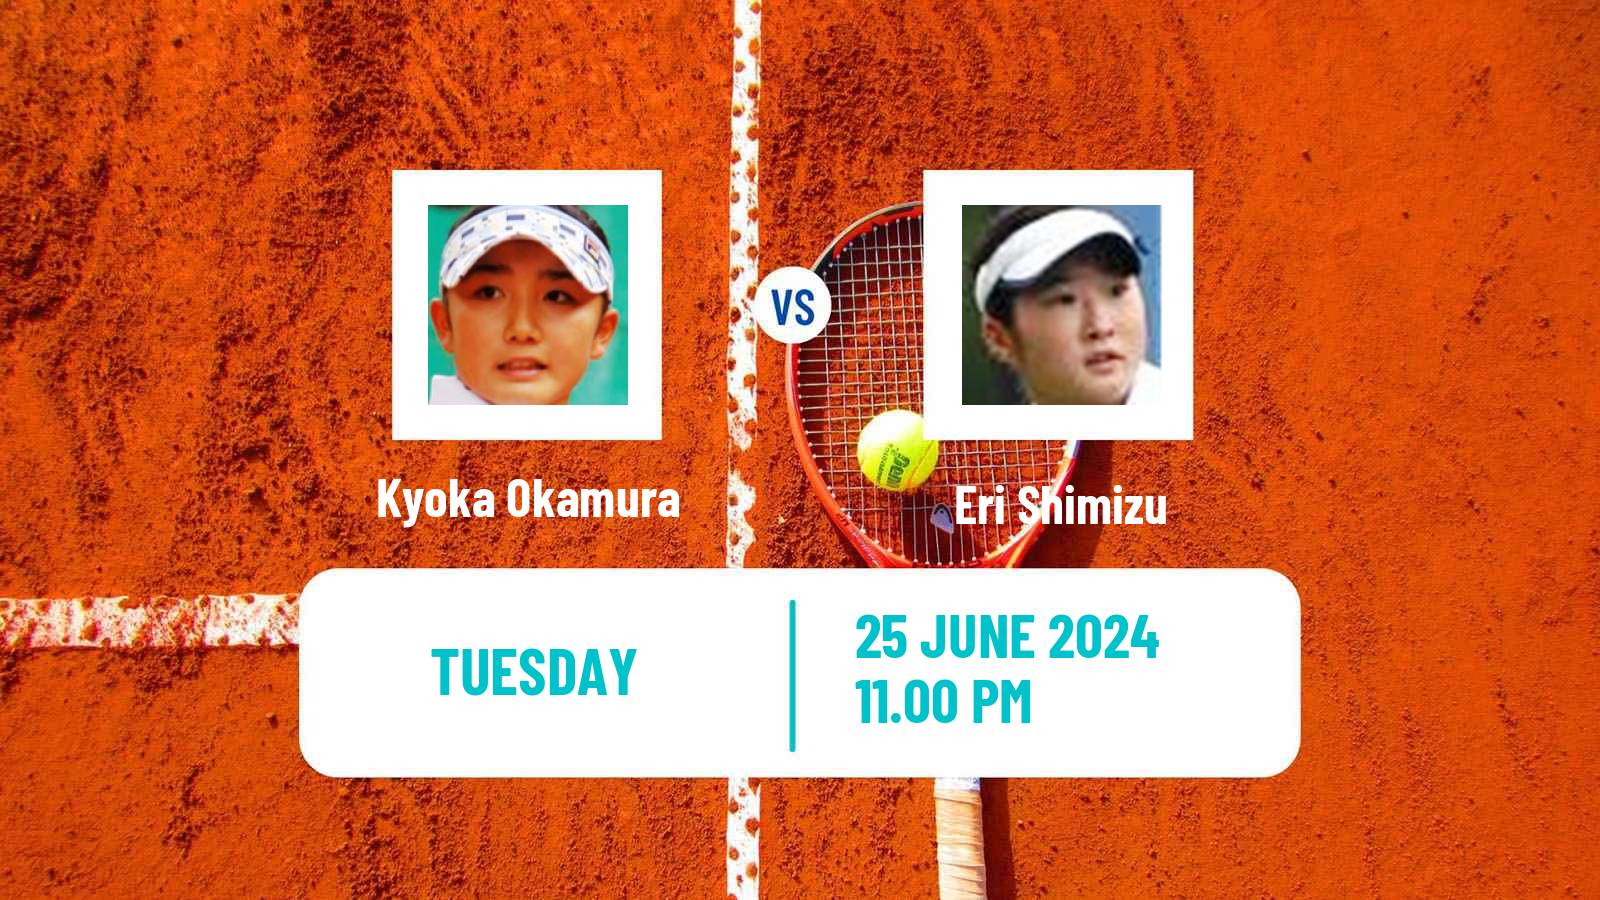 Tennis ITF W35 Taipei 2 Women Kyoka Okamura - Eri Shimizu